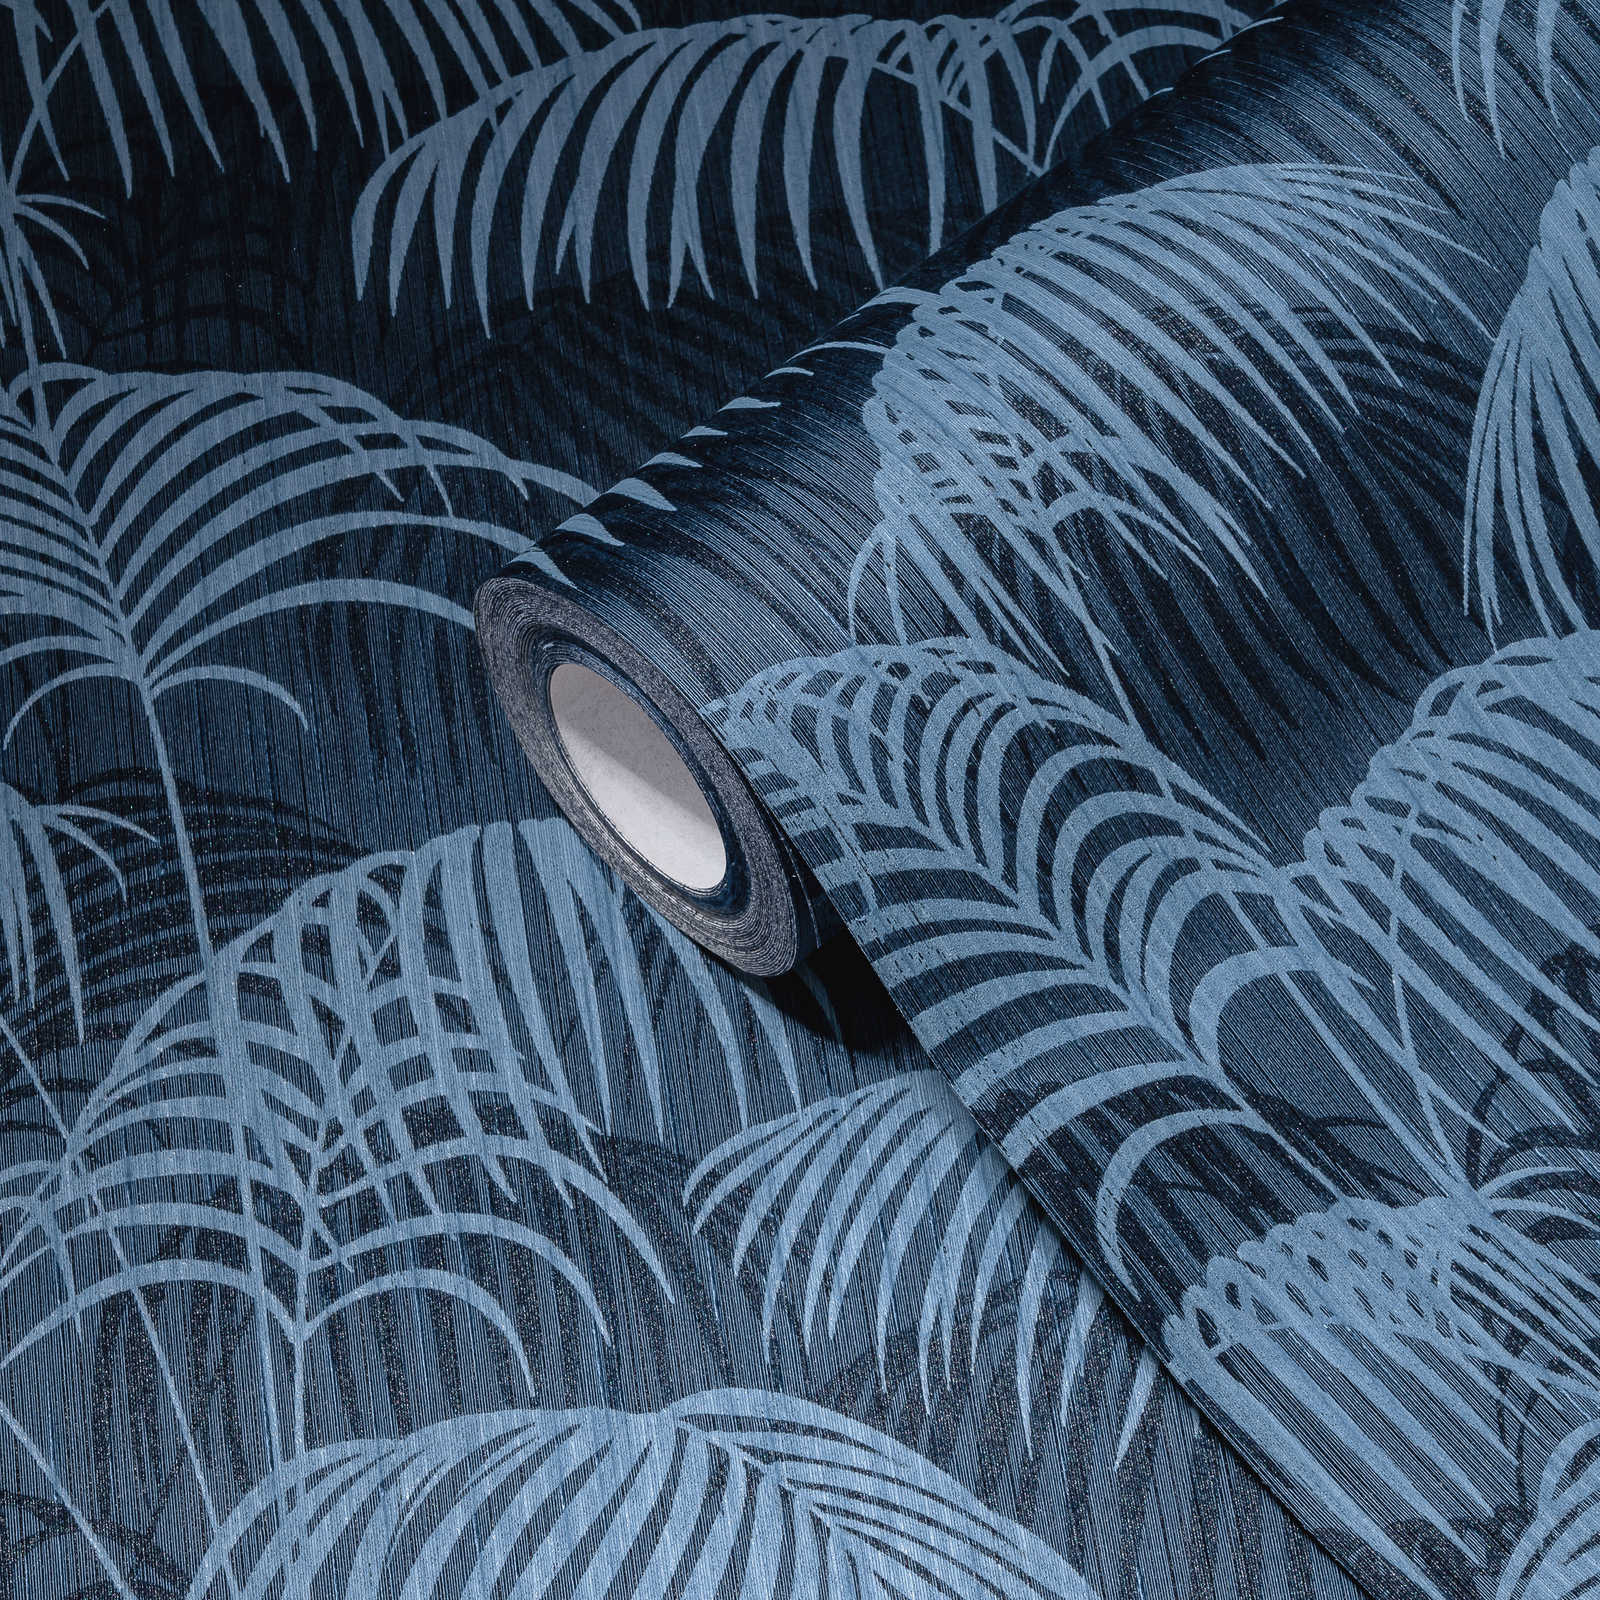             behang jungle bladeren patroon koloniale stijl - blauw
        